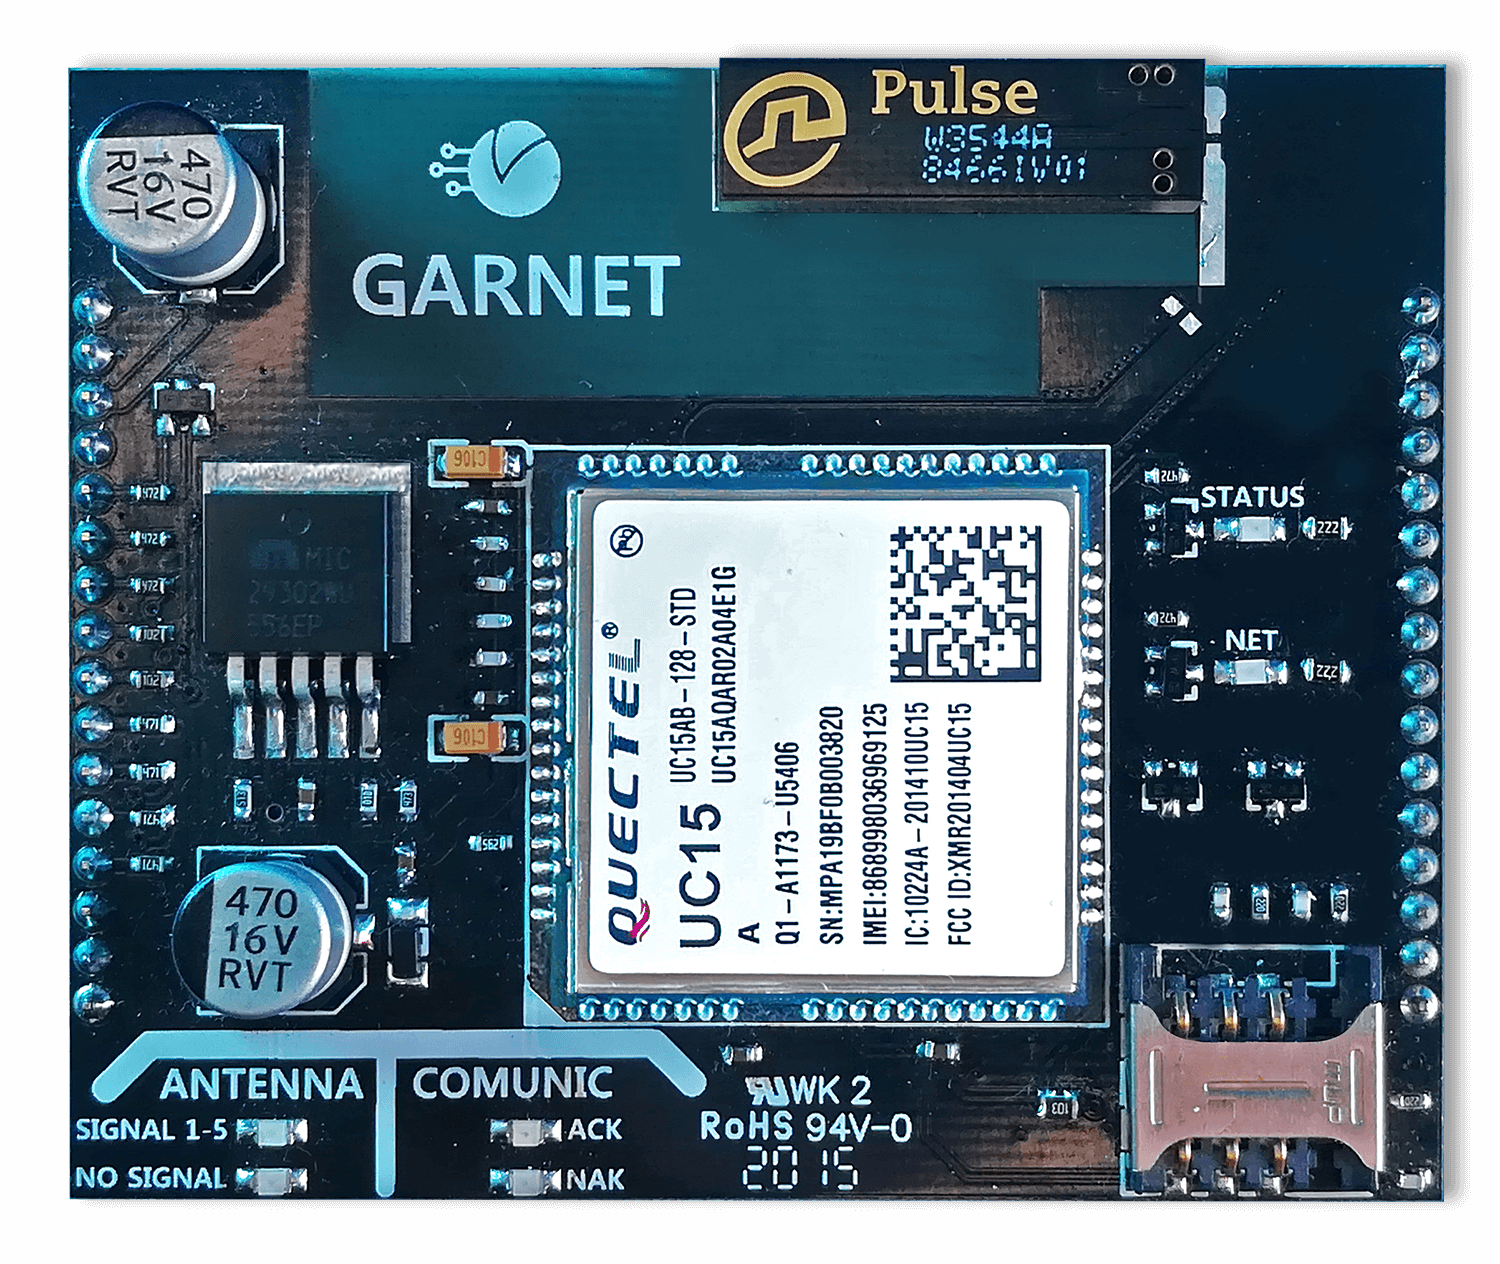 comunicador COM-900 Garnet